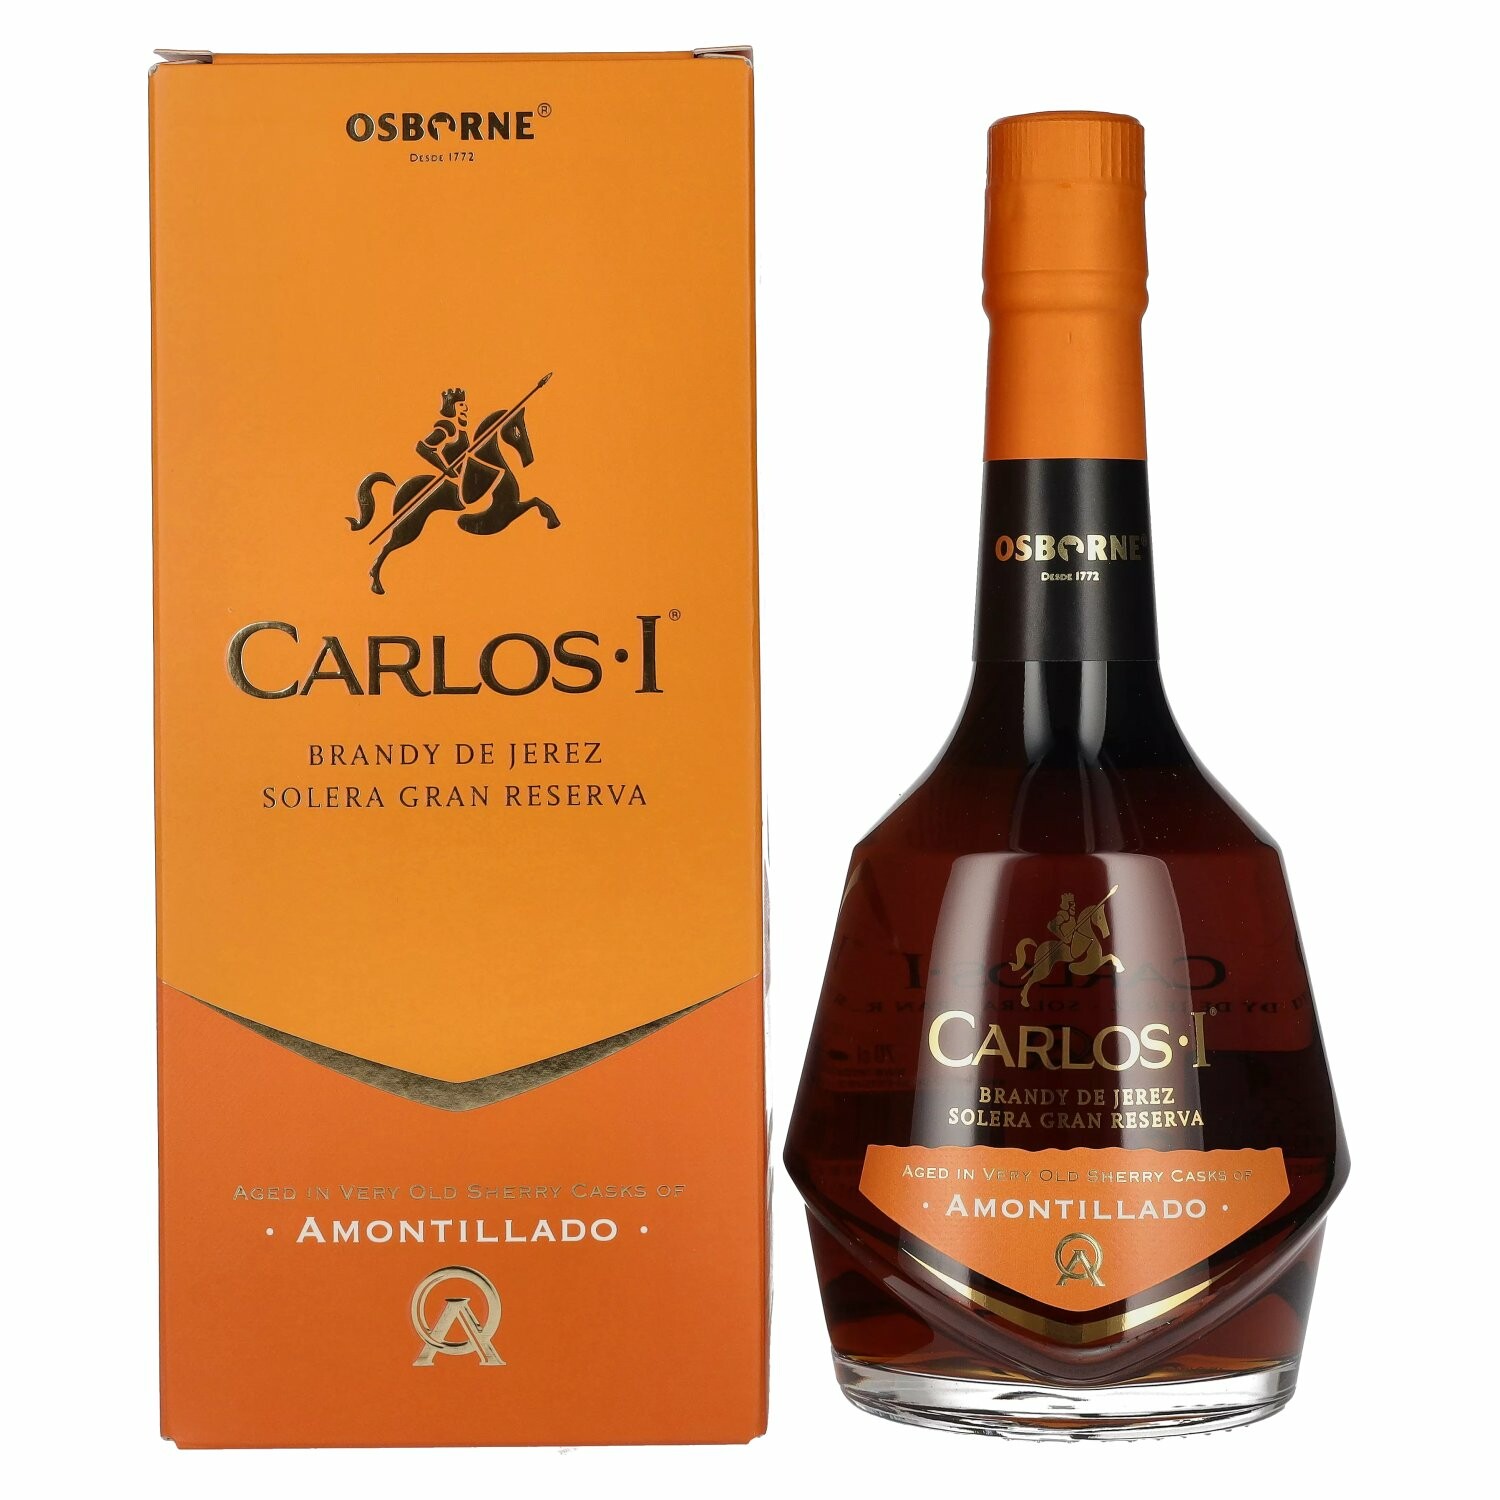 Carlos I Solera Gran Reserva AMONTILLADO Brandy de Jerez 40,3% Vol. 0,7l in Giftbox